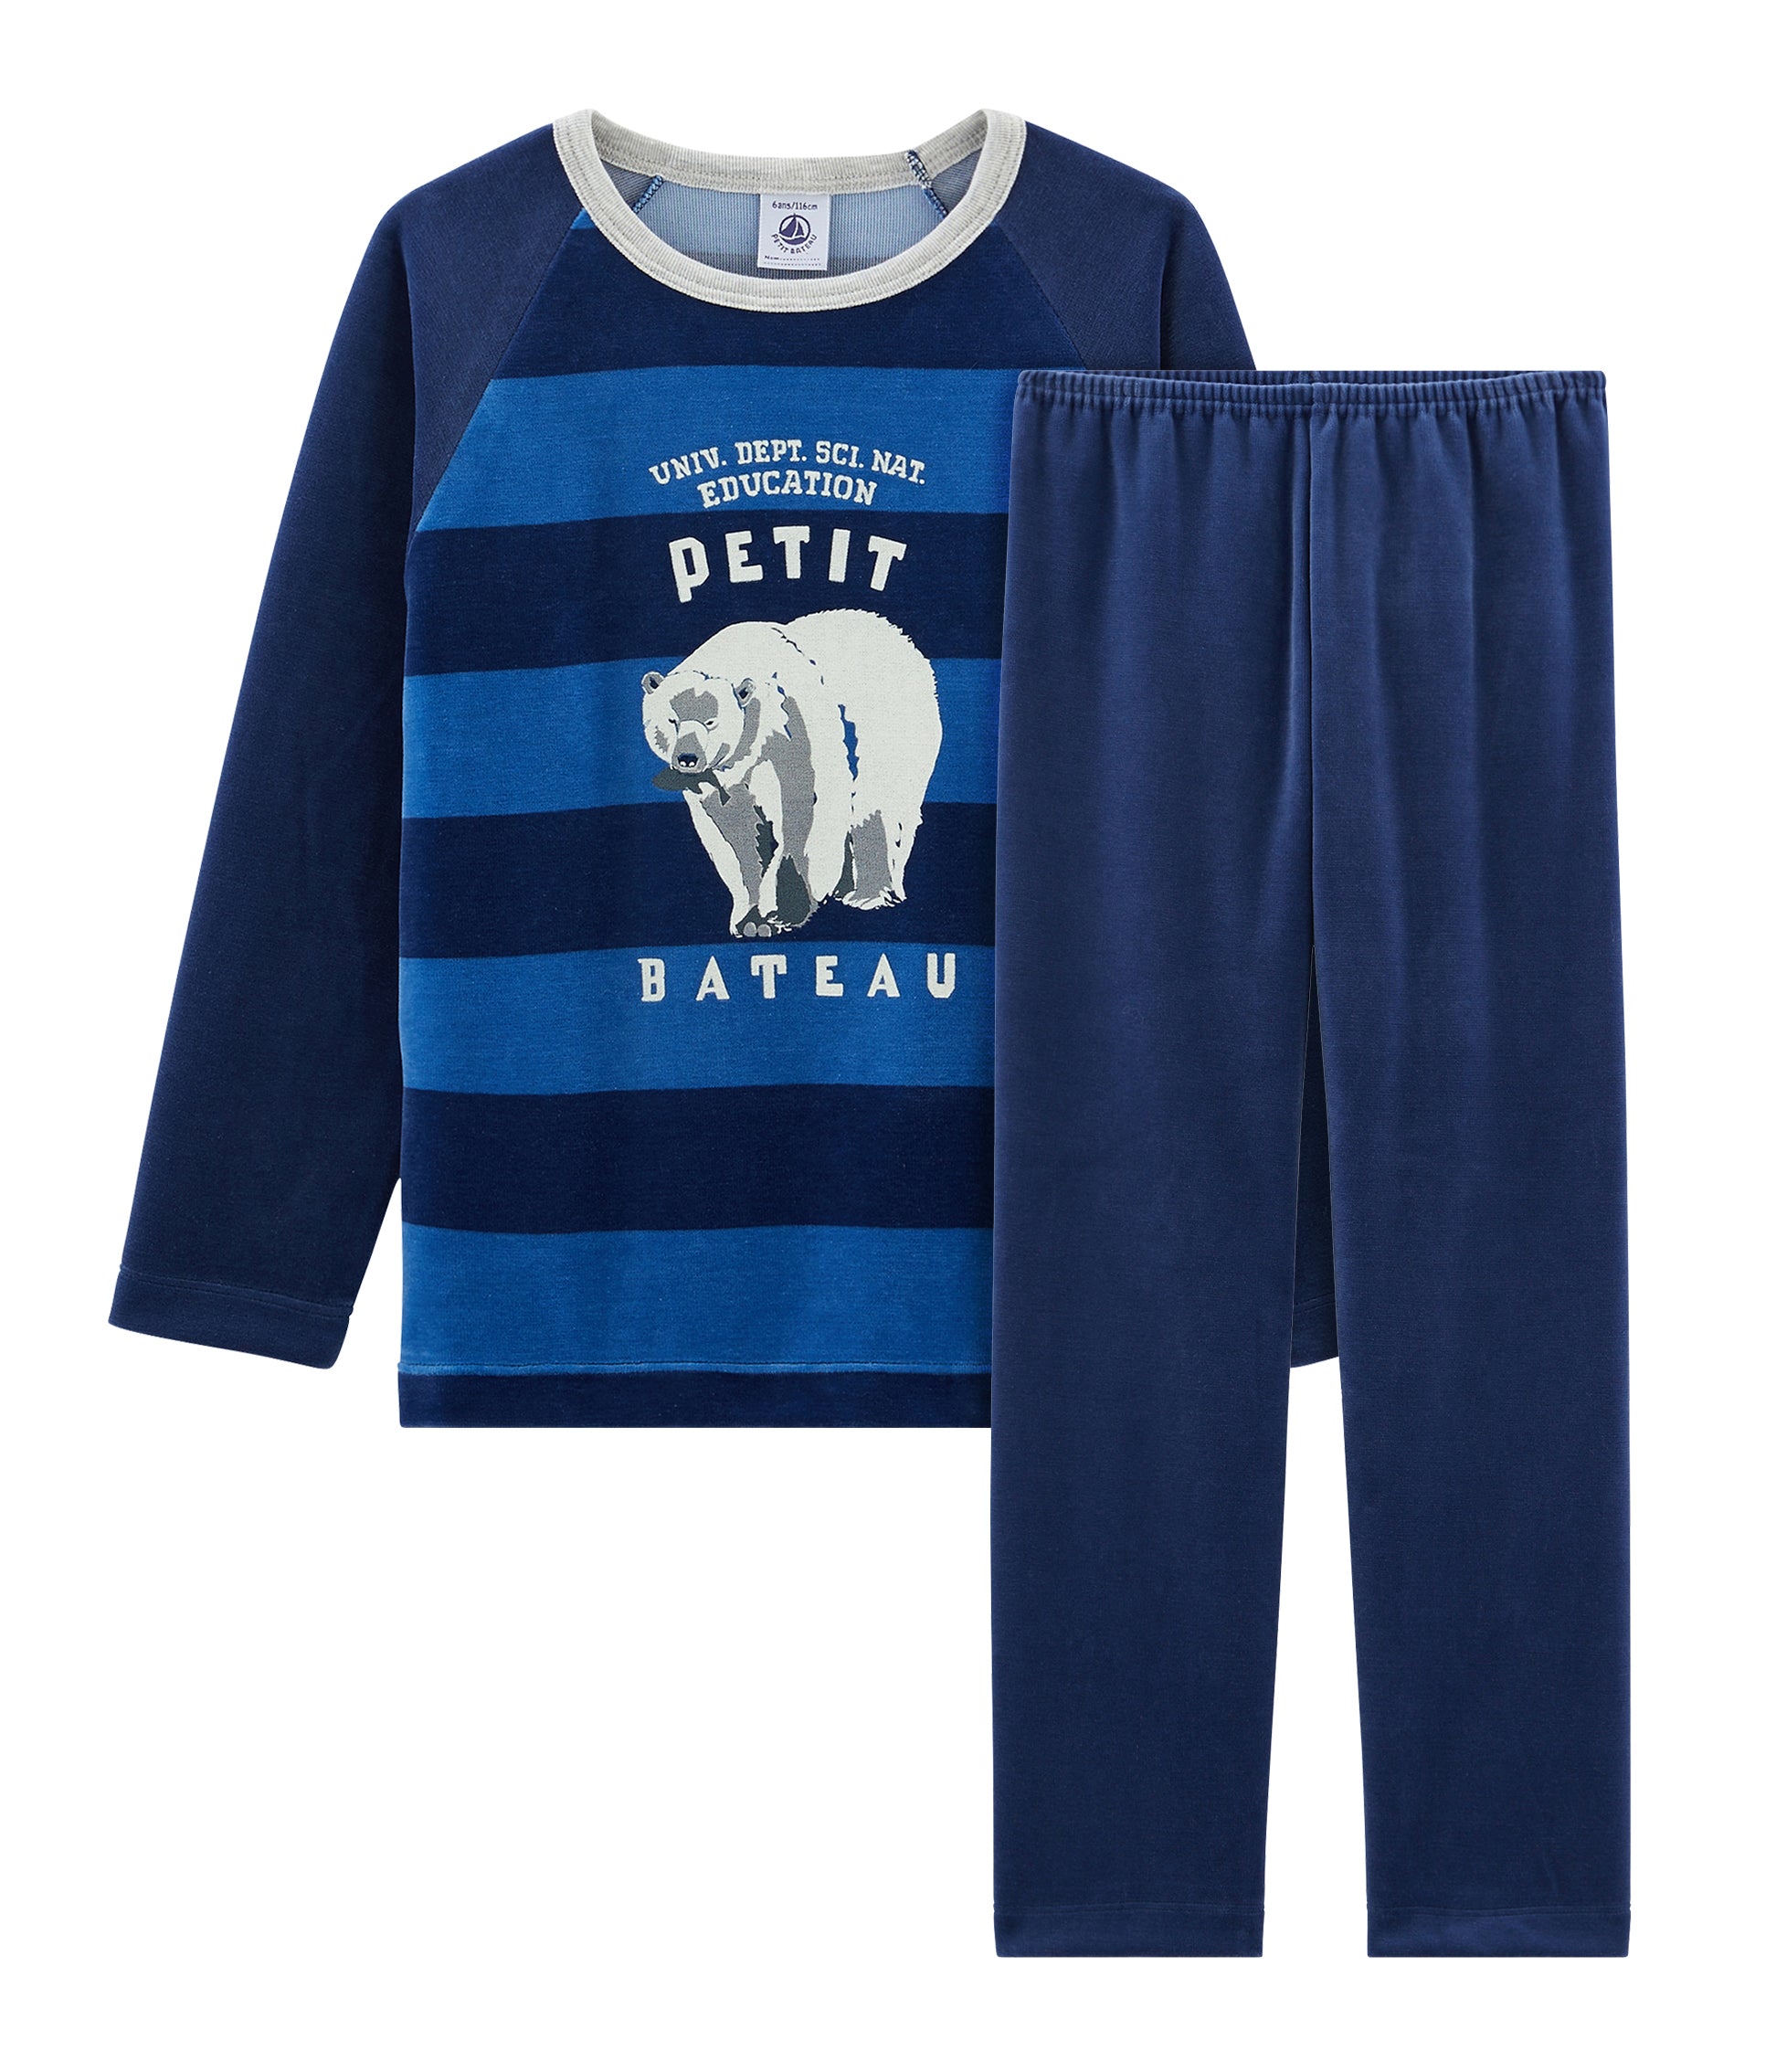 Boys Blue Printed Cotton Nightwear